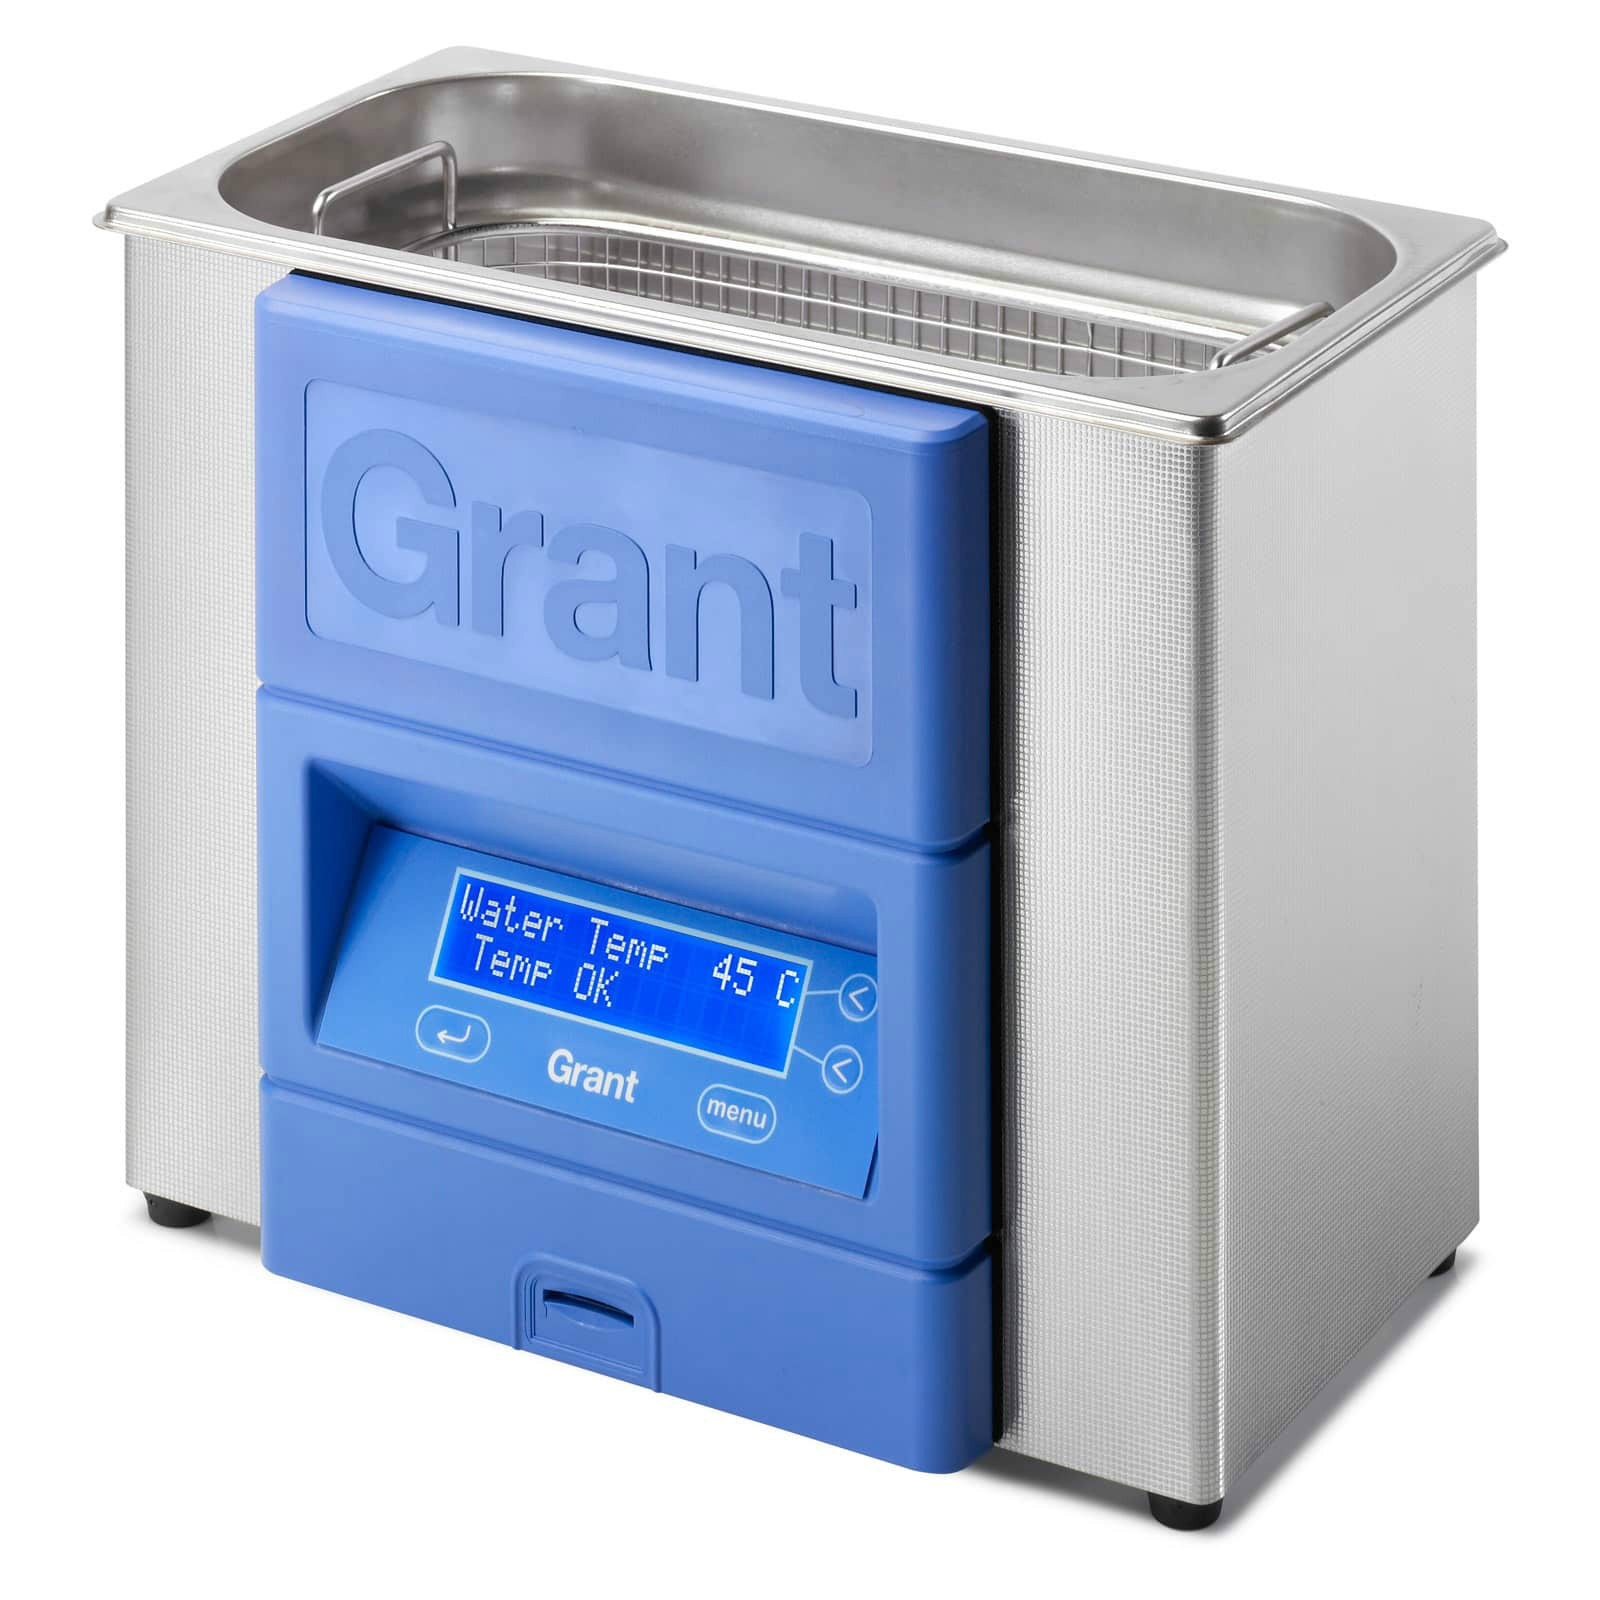 Grant 数字控制超声波清洗机